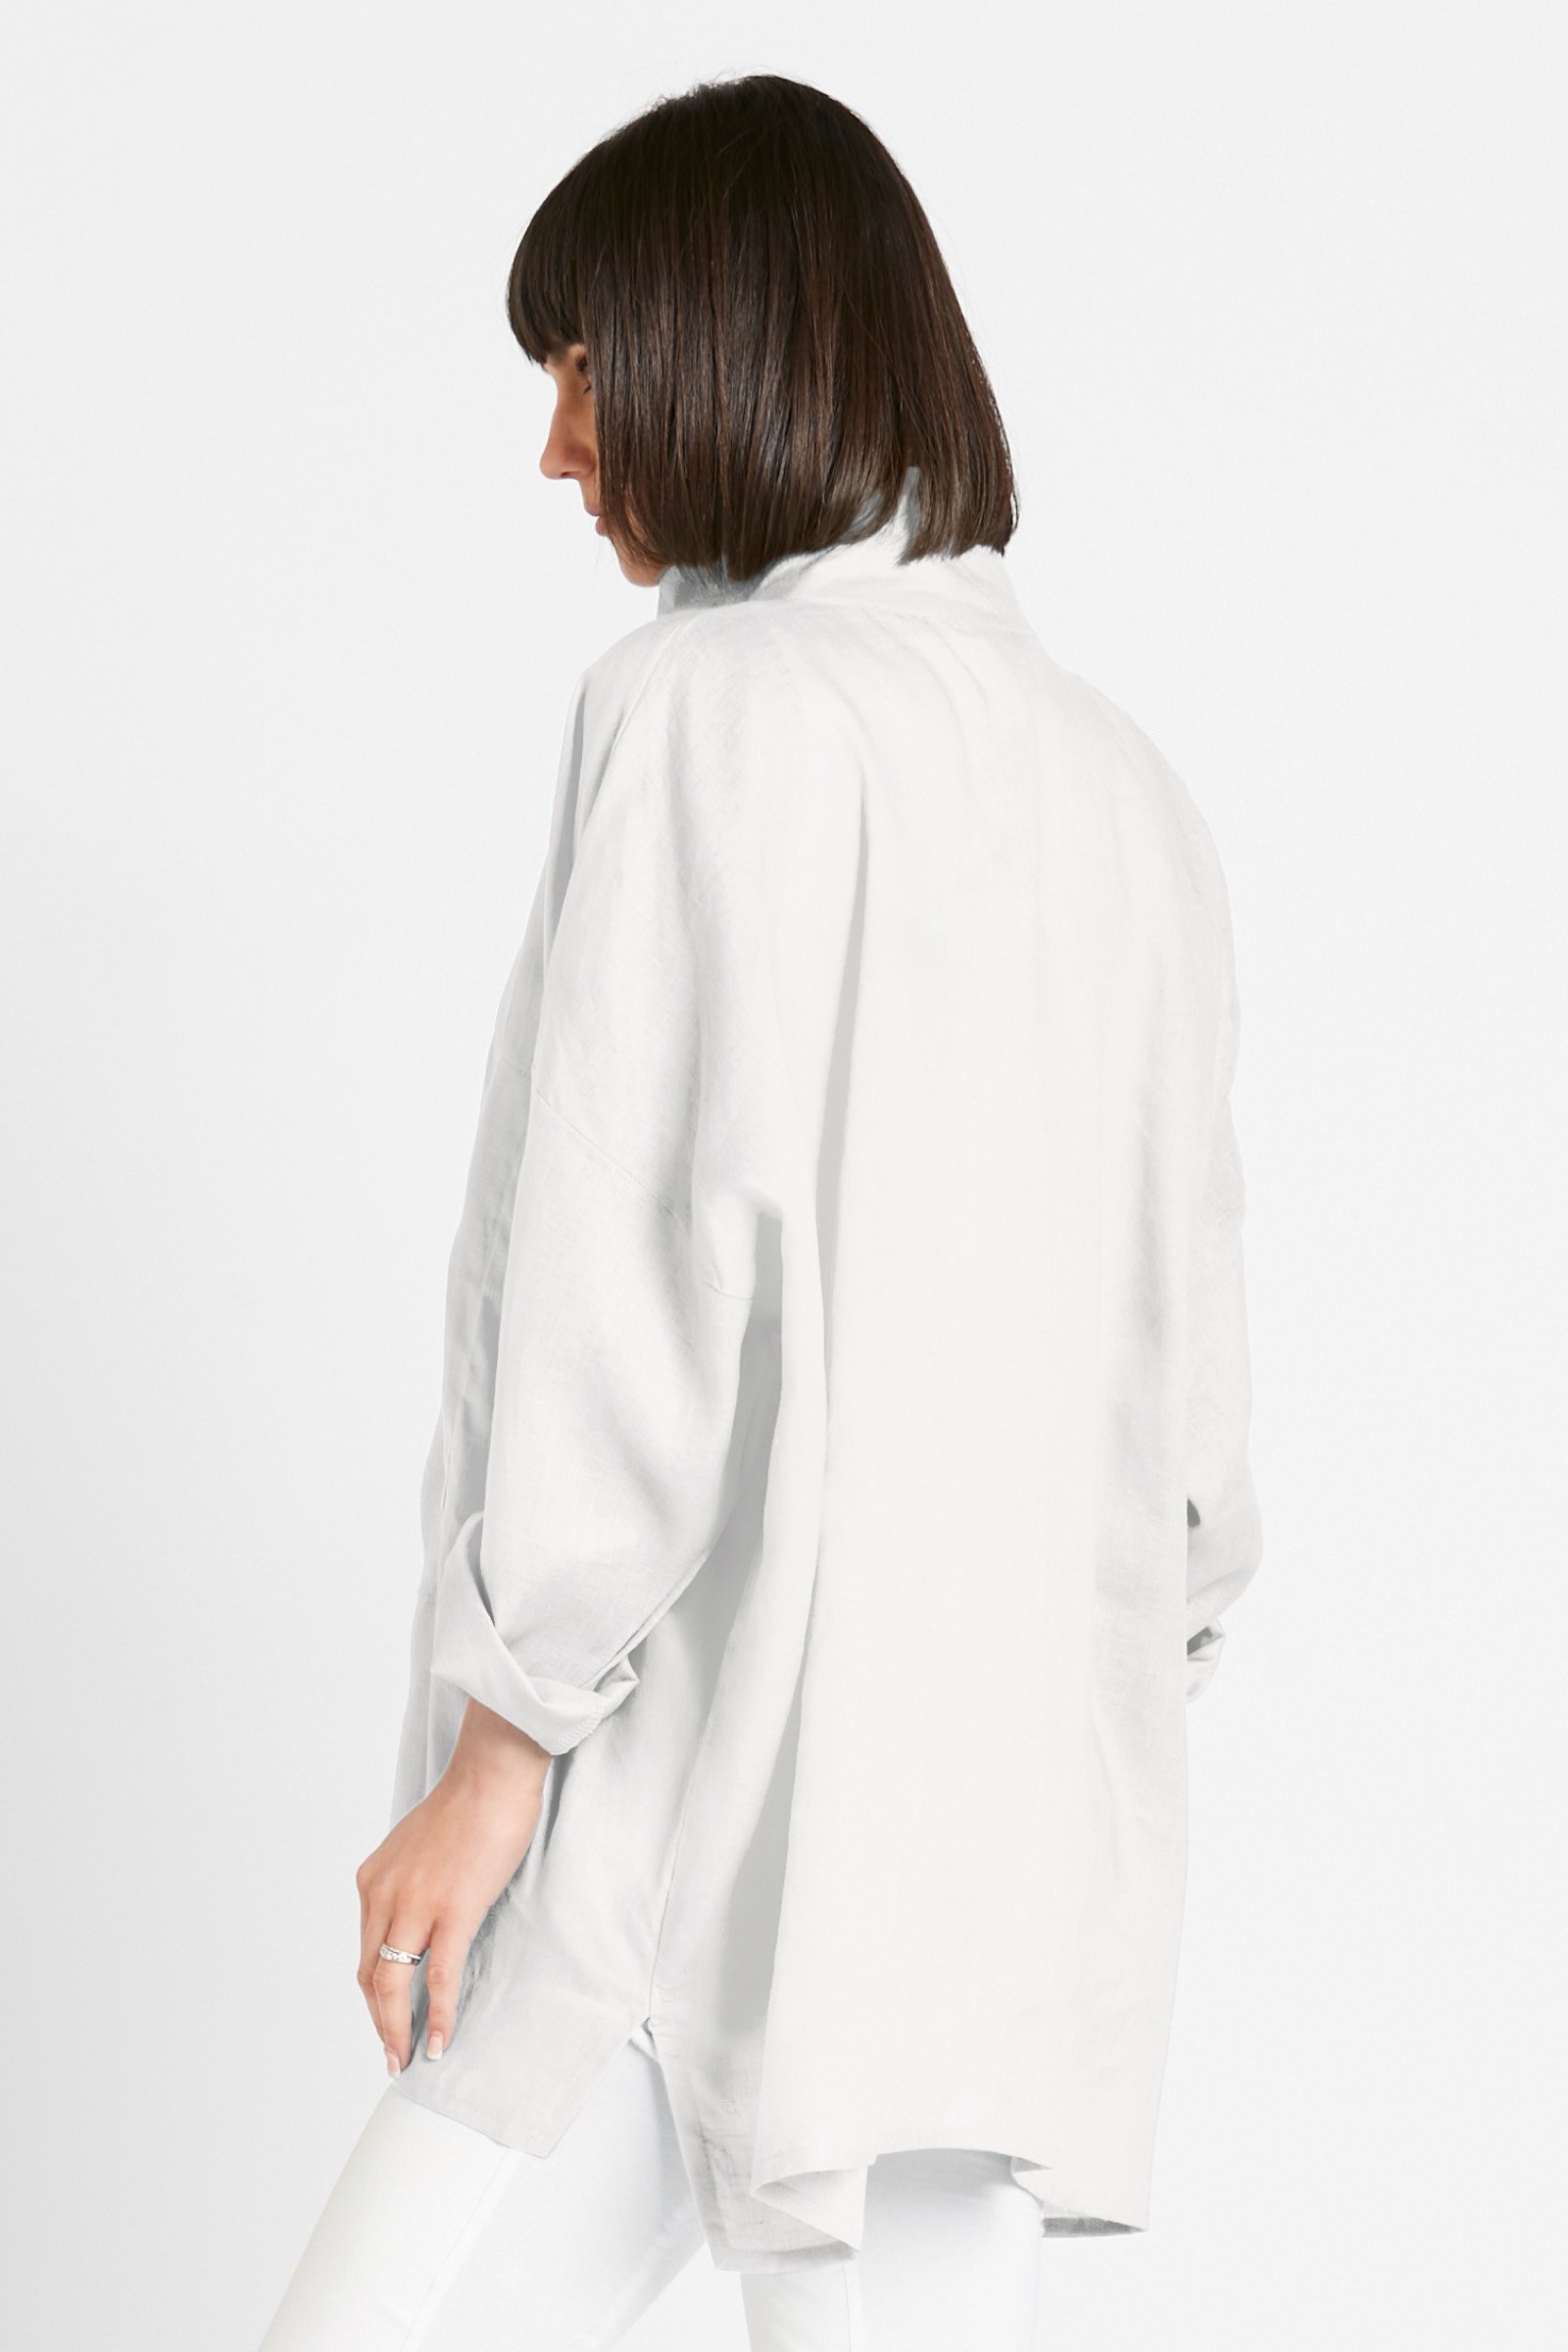 Linen Signature Shirt by Planet (Linen Shirt) | Artful Home